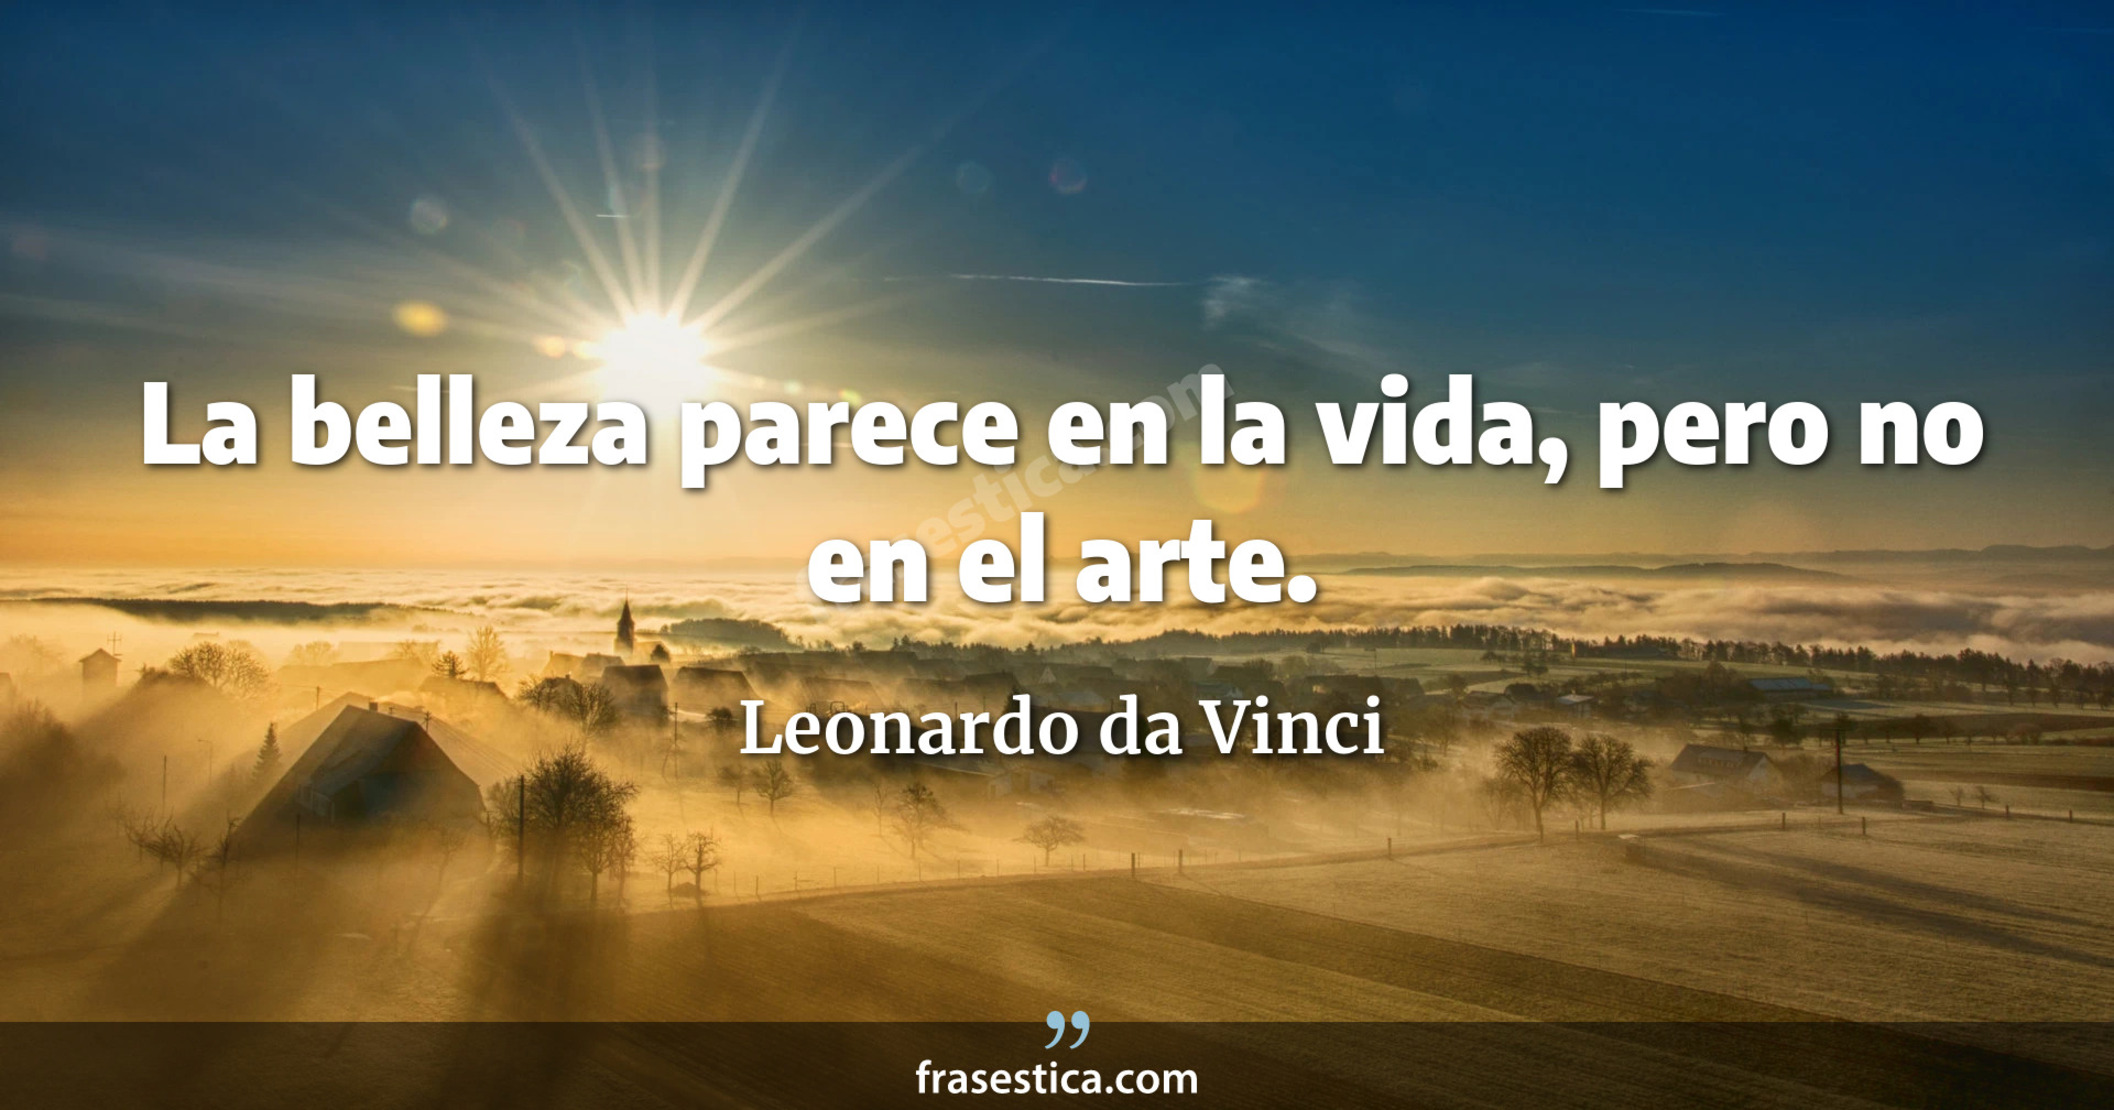 La belleza parece en la vida, pero no en el arte. - Leonardo da Vinci